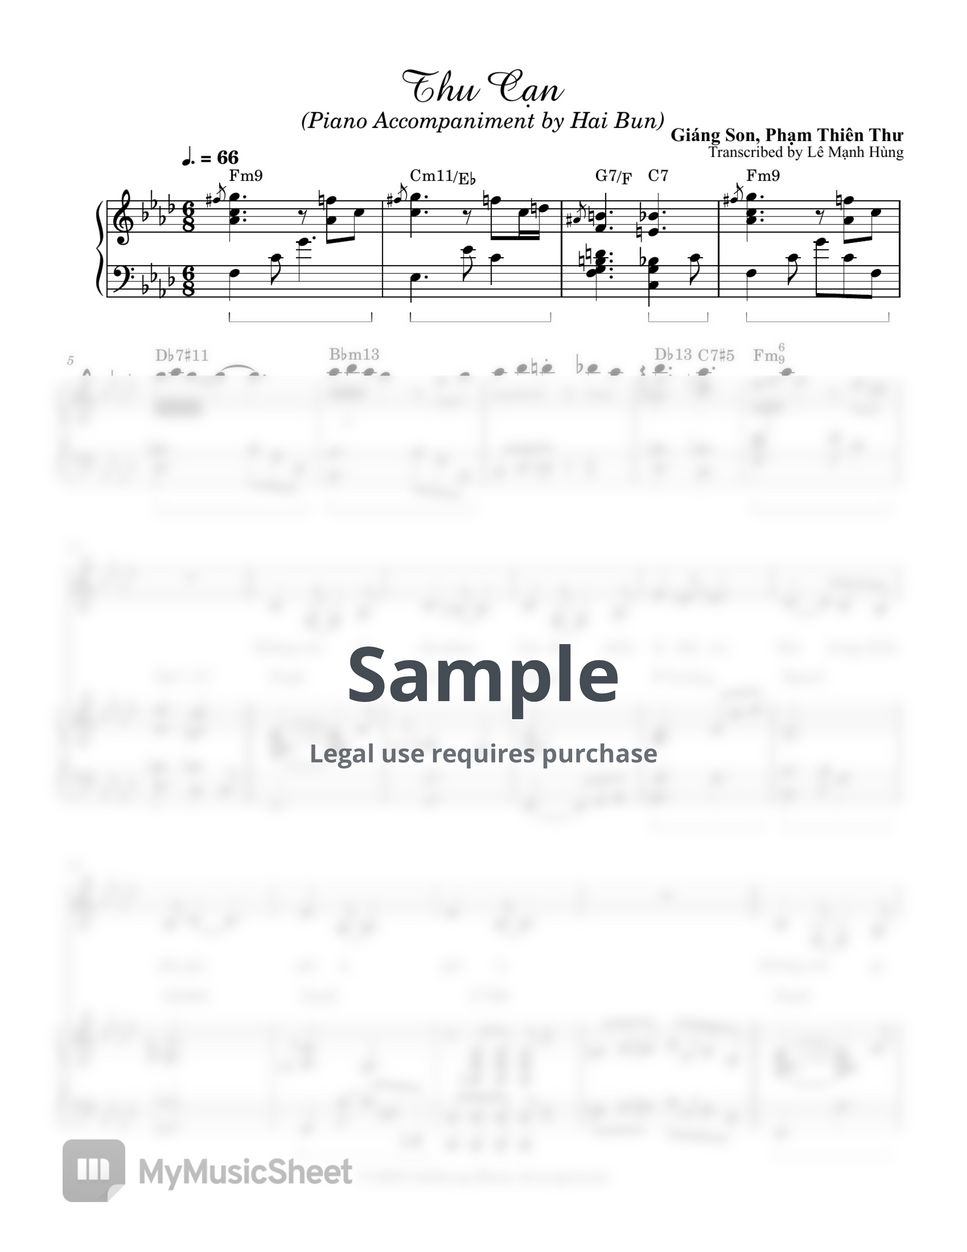 Piano Accompaniment by Hai Bun - Đệm hát Thu Cạn (Transcribed) by Le Manh Hung